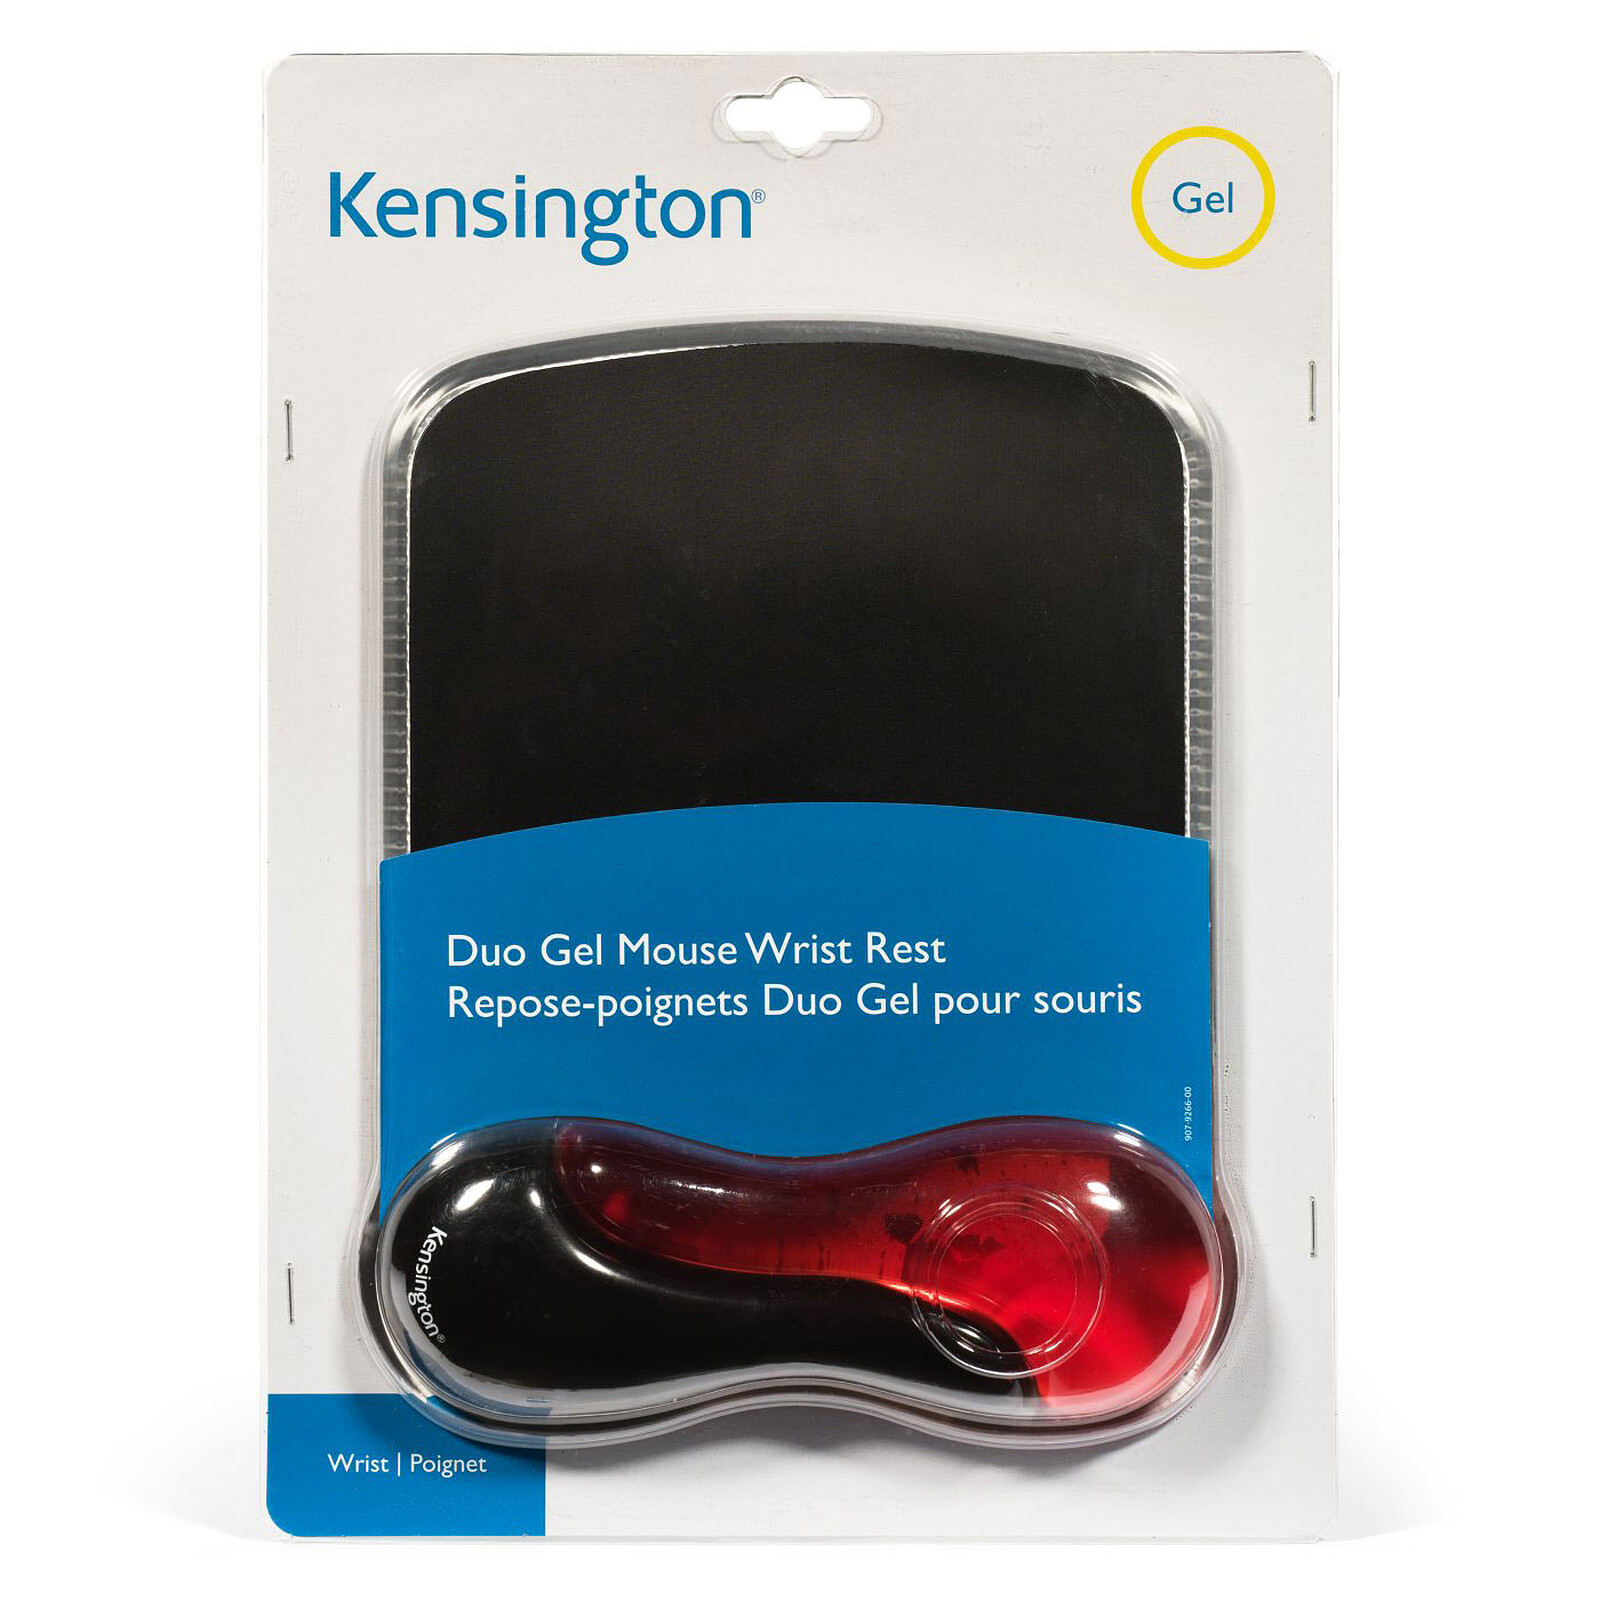 Kensington tapis de souris Duo Gel (coloris noir/rouge) - Tapis de souris -  Garantie 3 ans LDLC